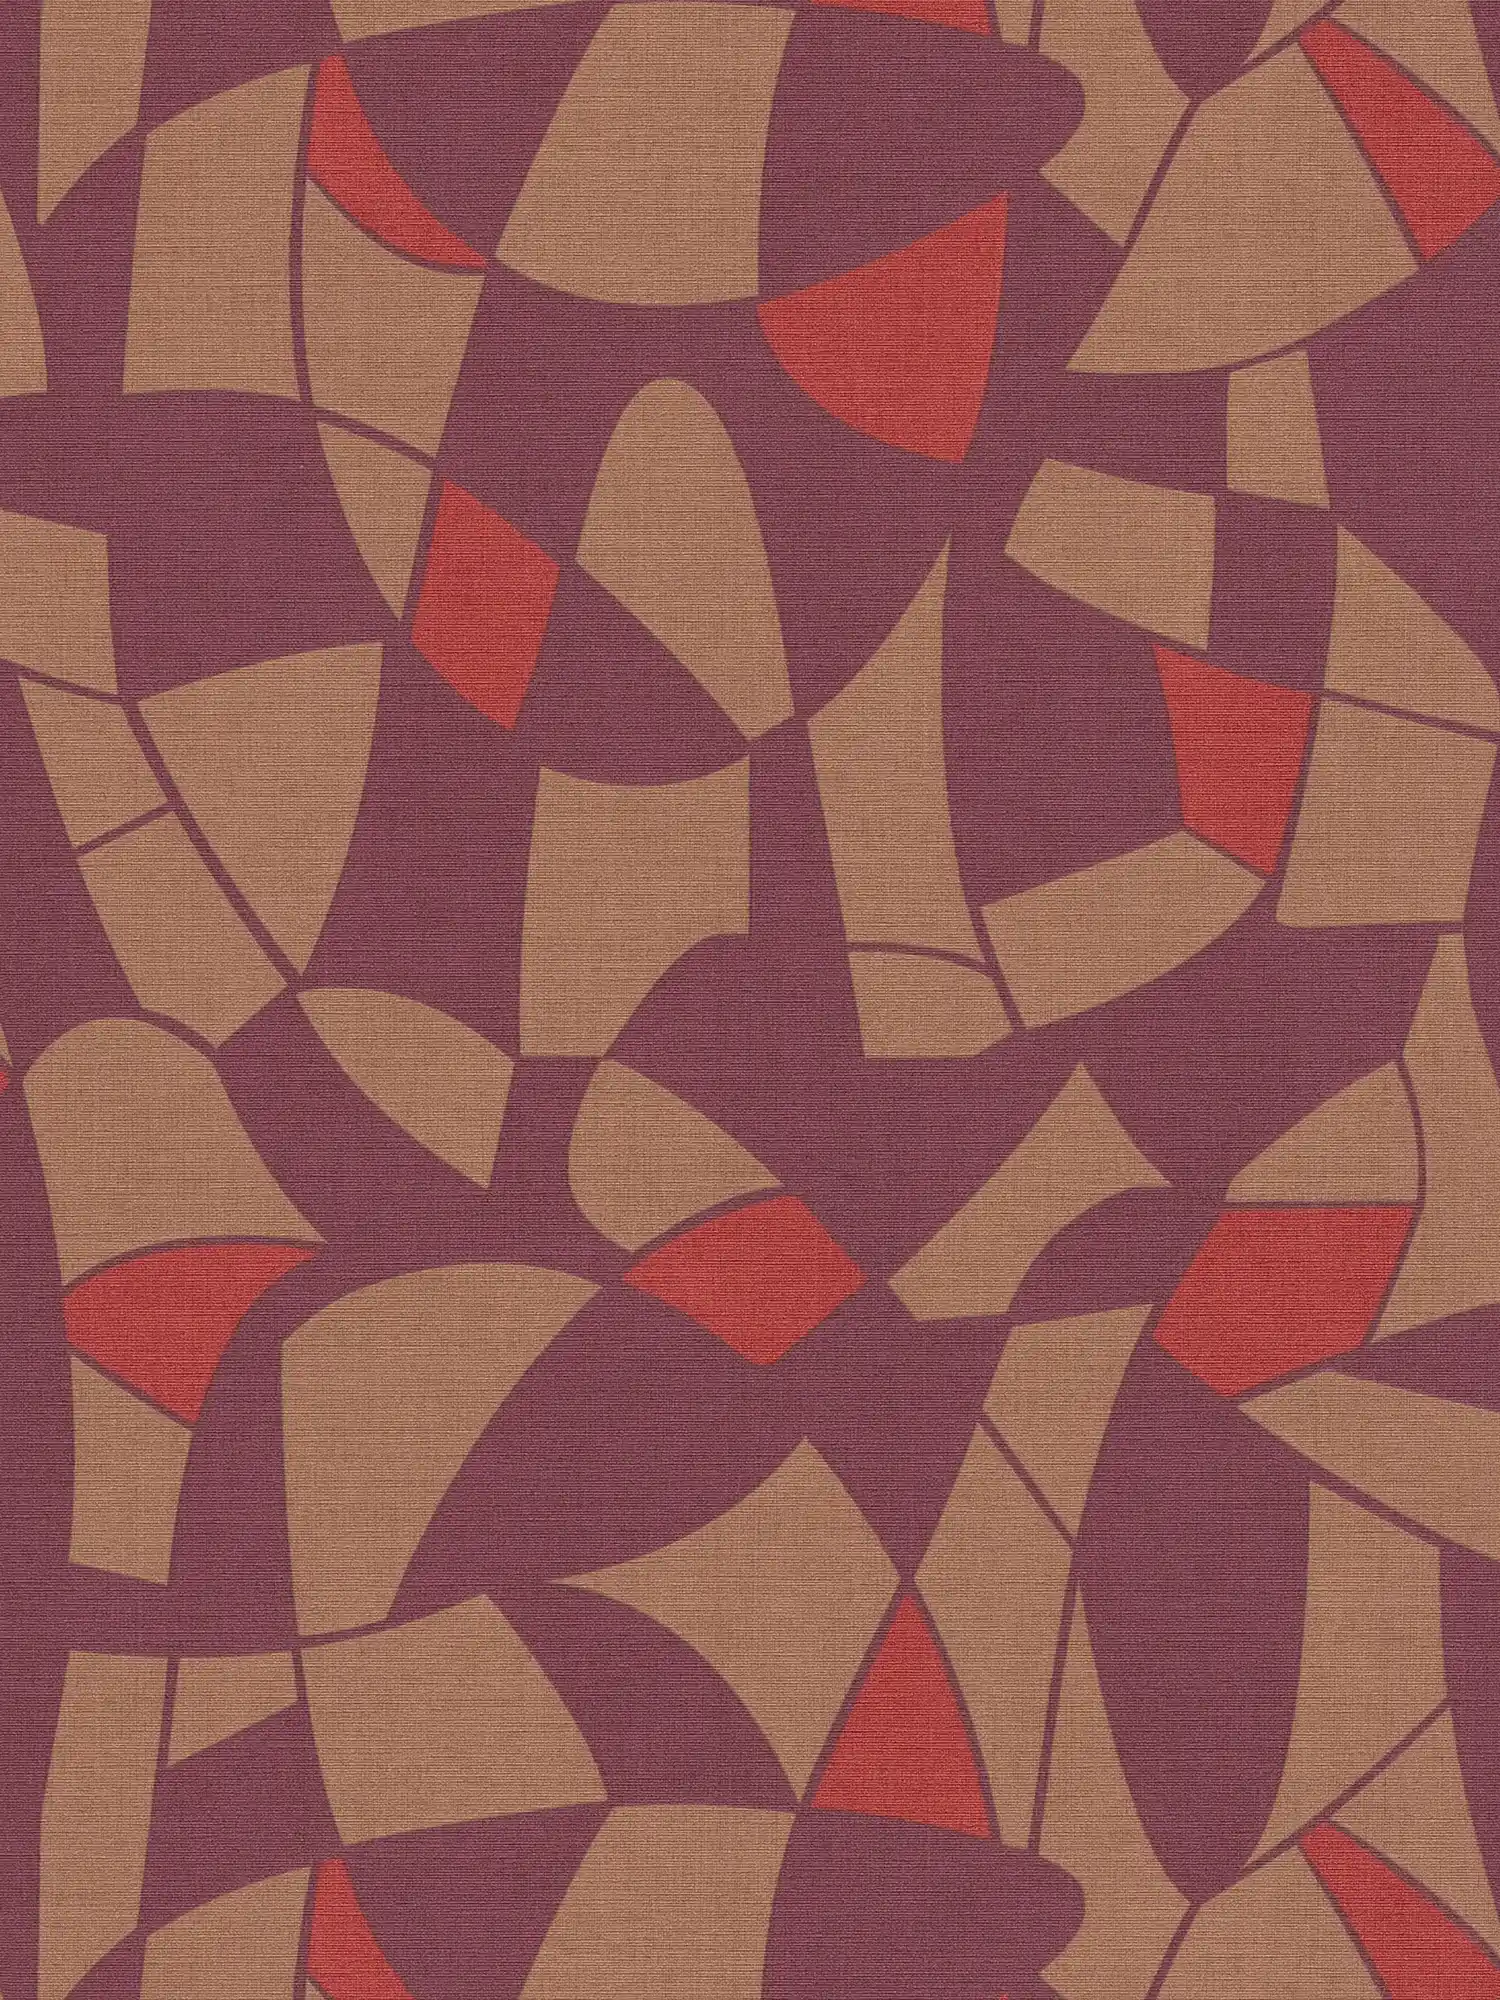 Carta da parati in tessuto non tessuto in colori scuri con un motivo astratto - viola, marrone, rosso
